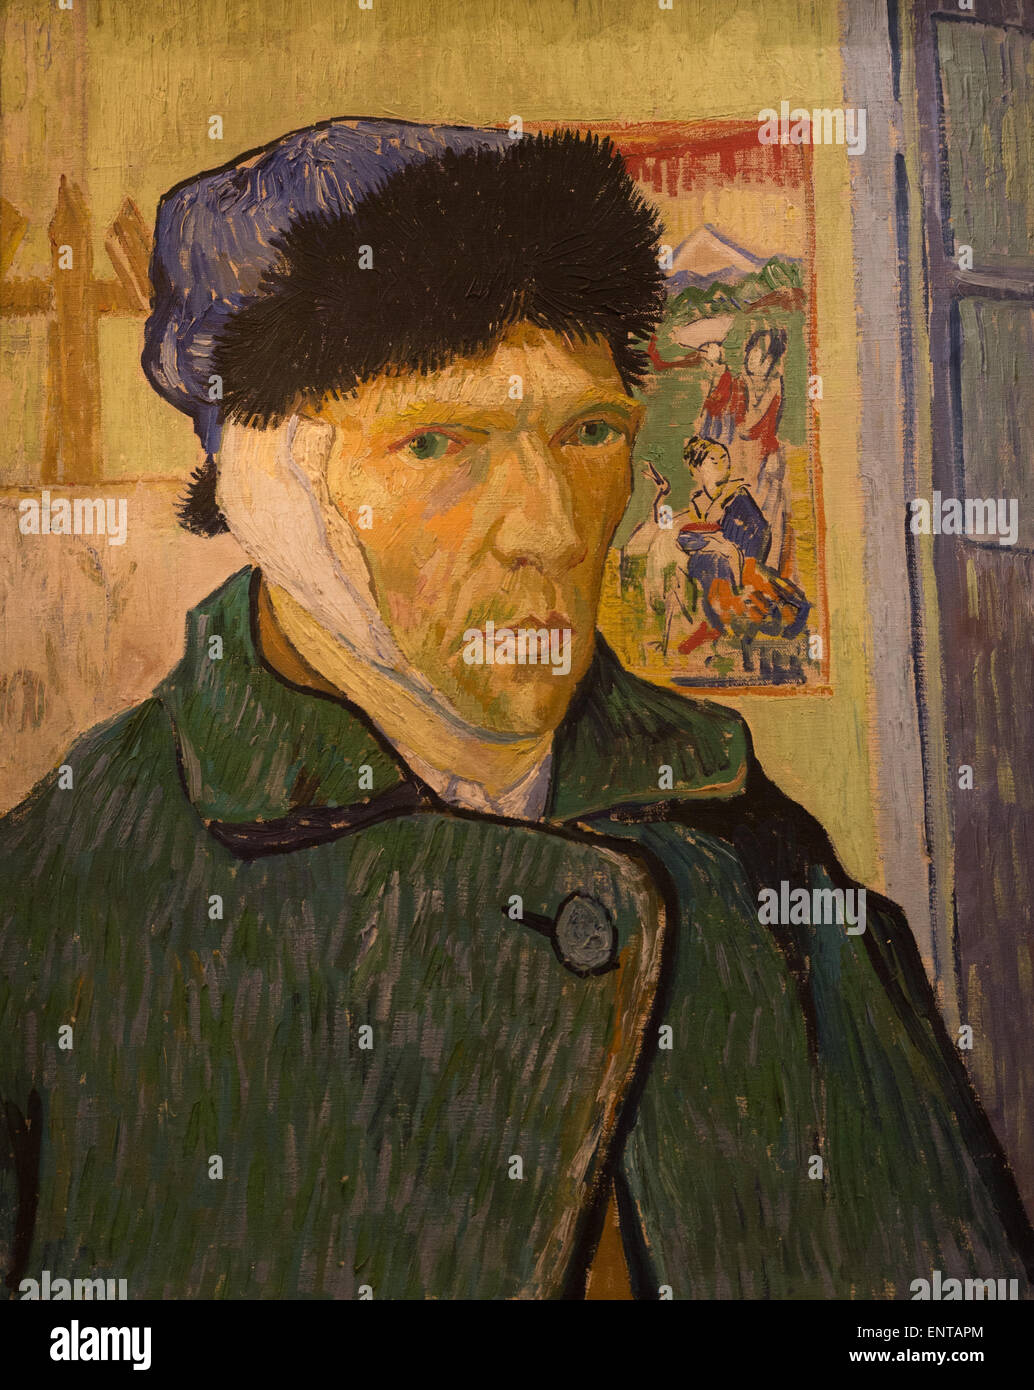 ActiveMuseum 0006332.jpg / Selbstporträt mit einem verbundenem Ohr Paul Gauguin trat Van Gogh in der Stadt Arles im November 1888, gemeinsam zu malen, in welche Van Gogh "Studio des Südens" genannt, aber sie begann schnell zu streiten. Nach einer brutalen Auseinandersetzung verstümmelt Van Gogh sein linke Ohr. Dieses Selbstporträt war eines der ersten Werke van, die Gogh malte nach diesem Vorfall. 22.01.2014 - / 19. Jahrhundert Sammlung / aktive Museum Stockfoto